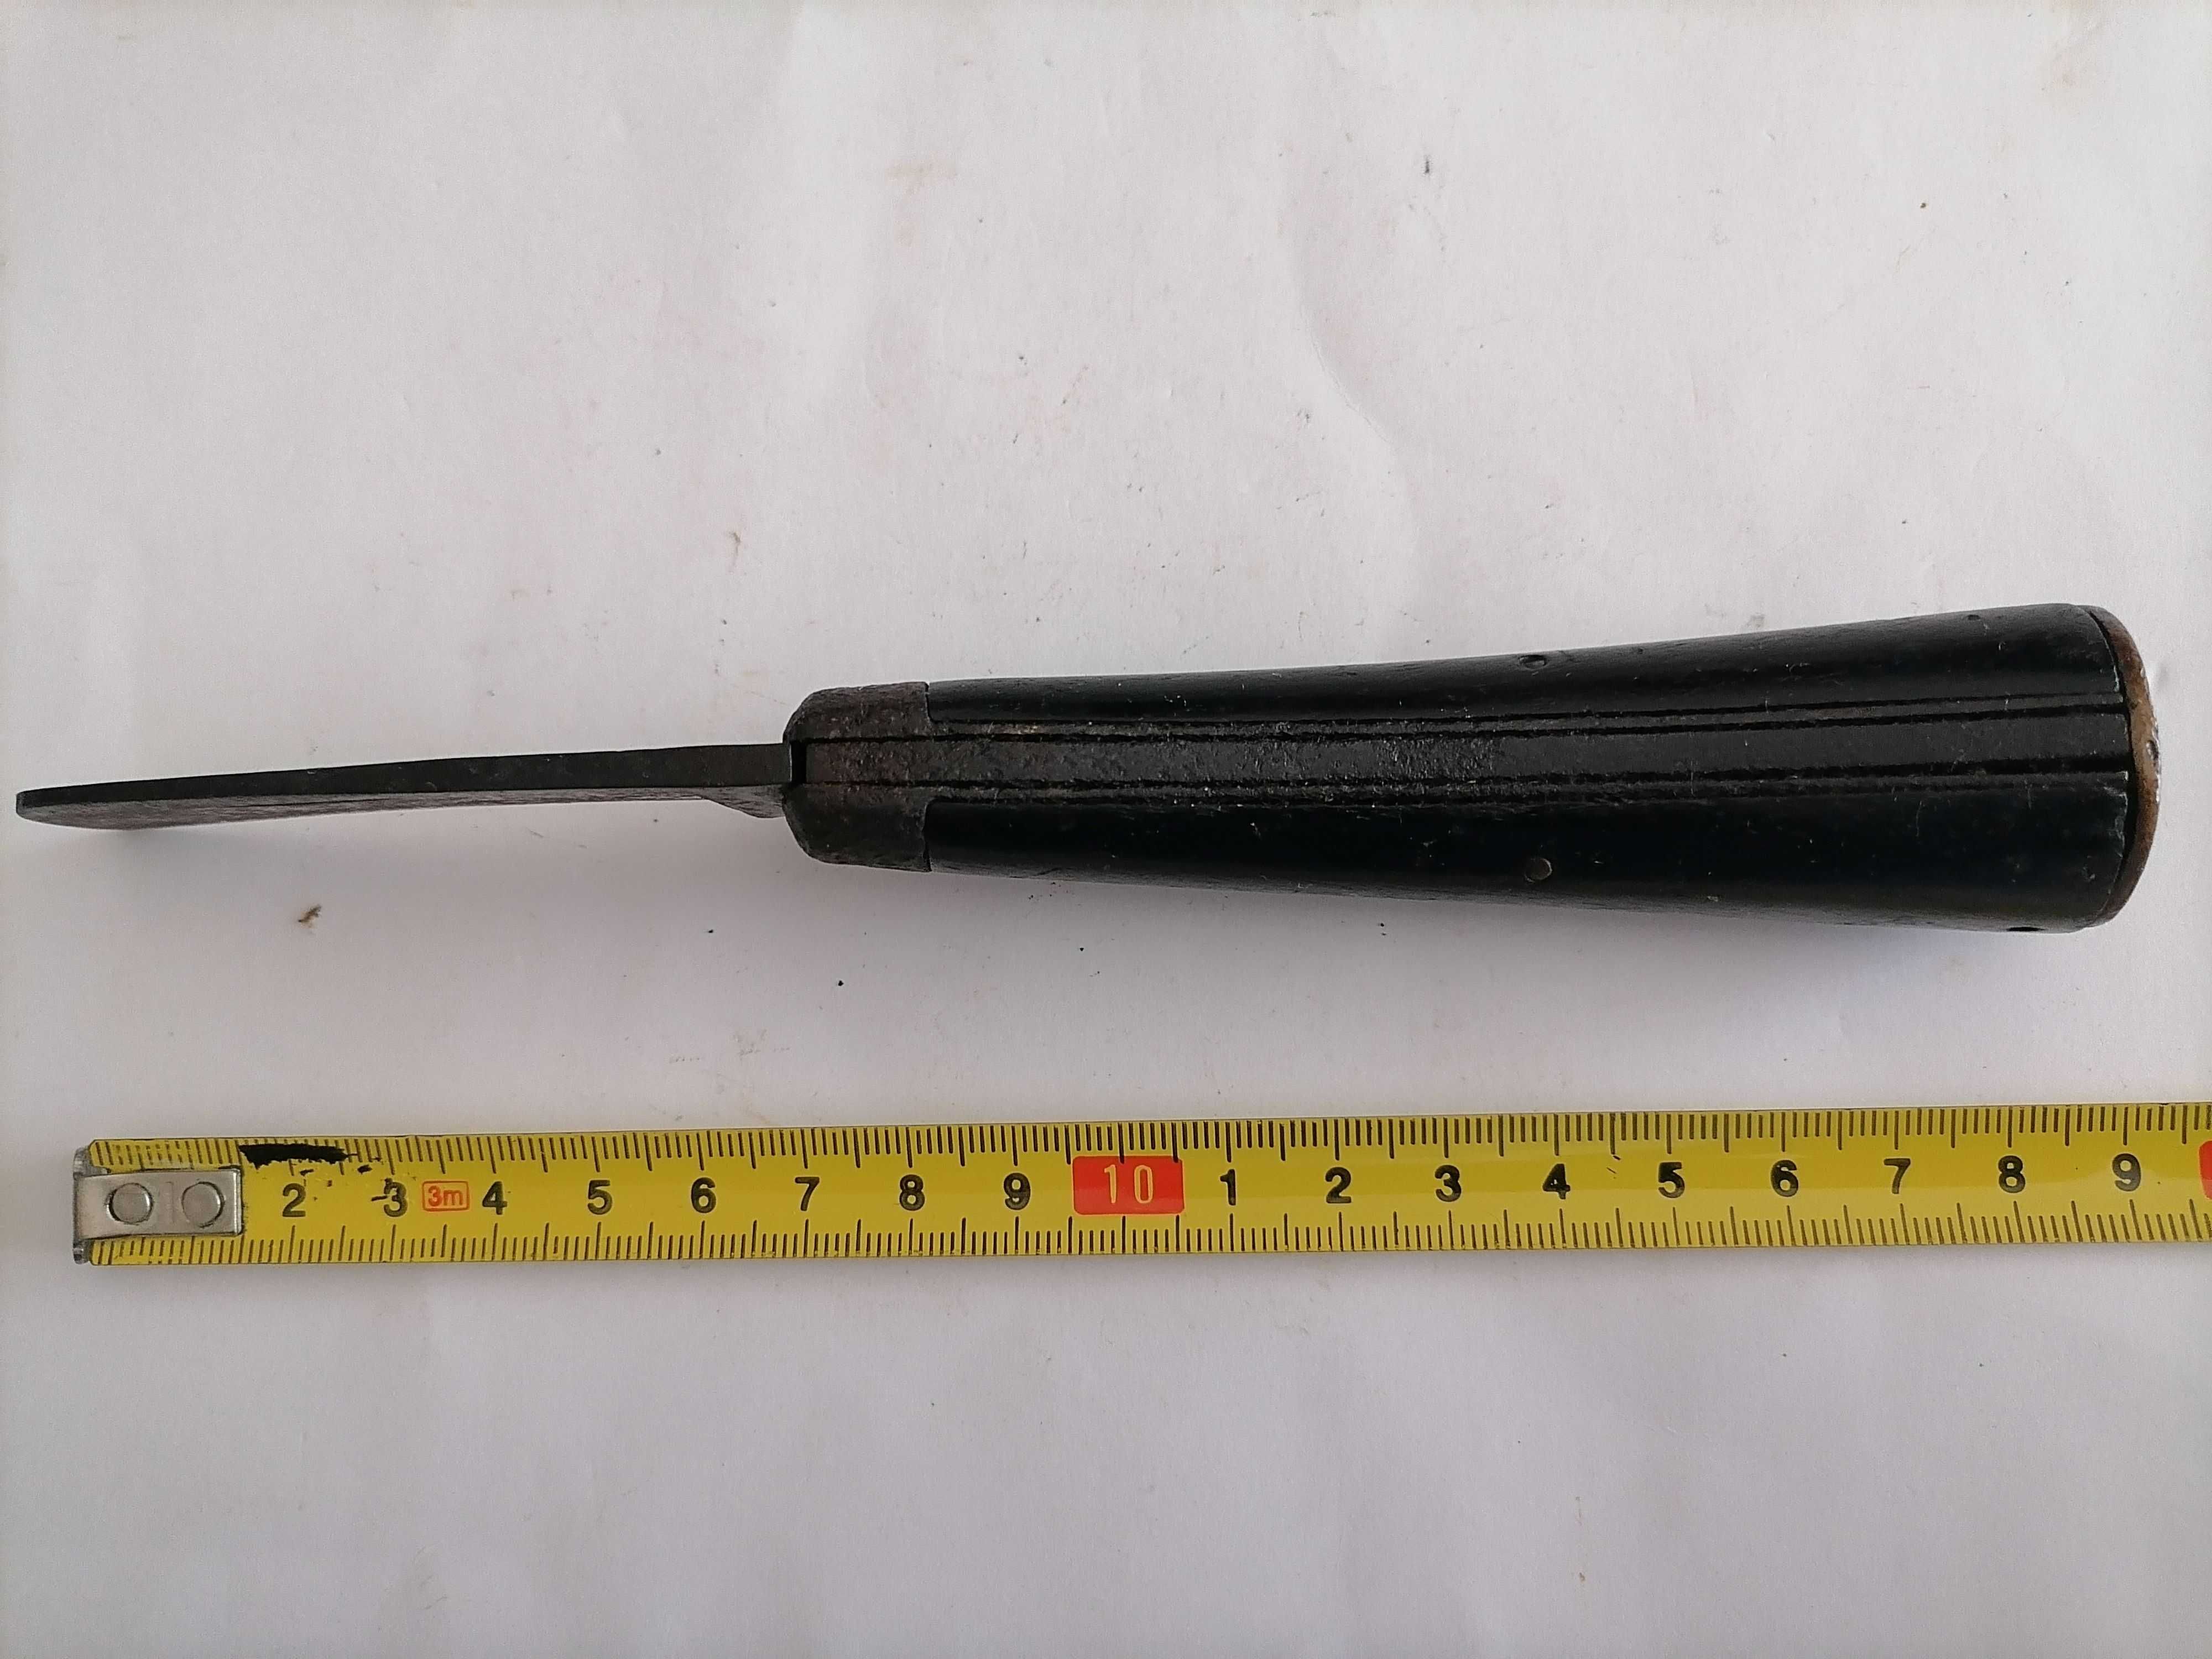 Canivete de Coleção de Enxertia - Cabo Madeira -s/ Marca/Identificar